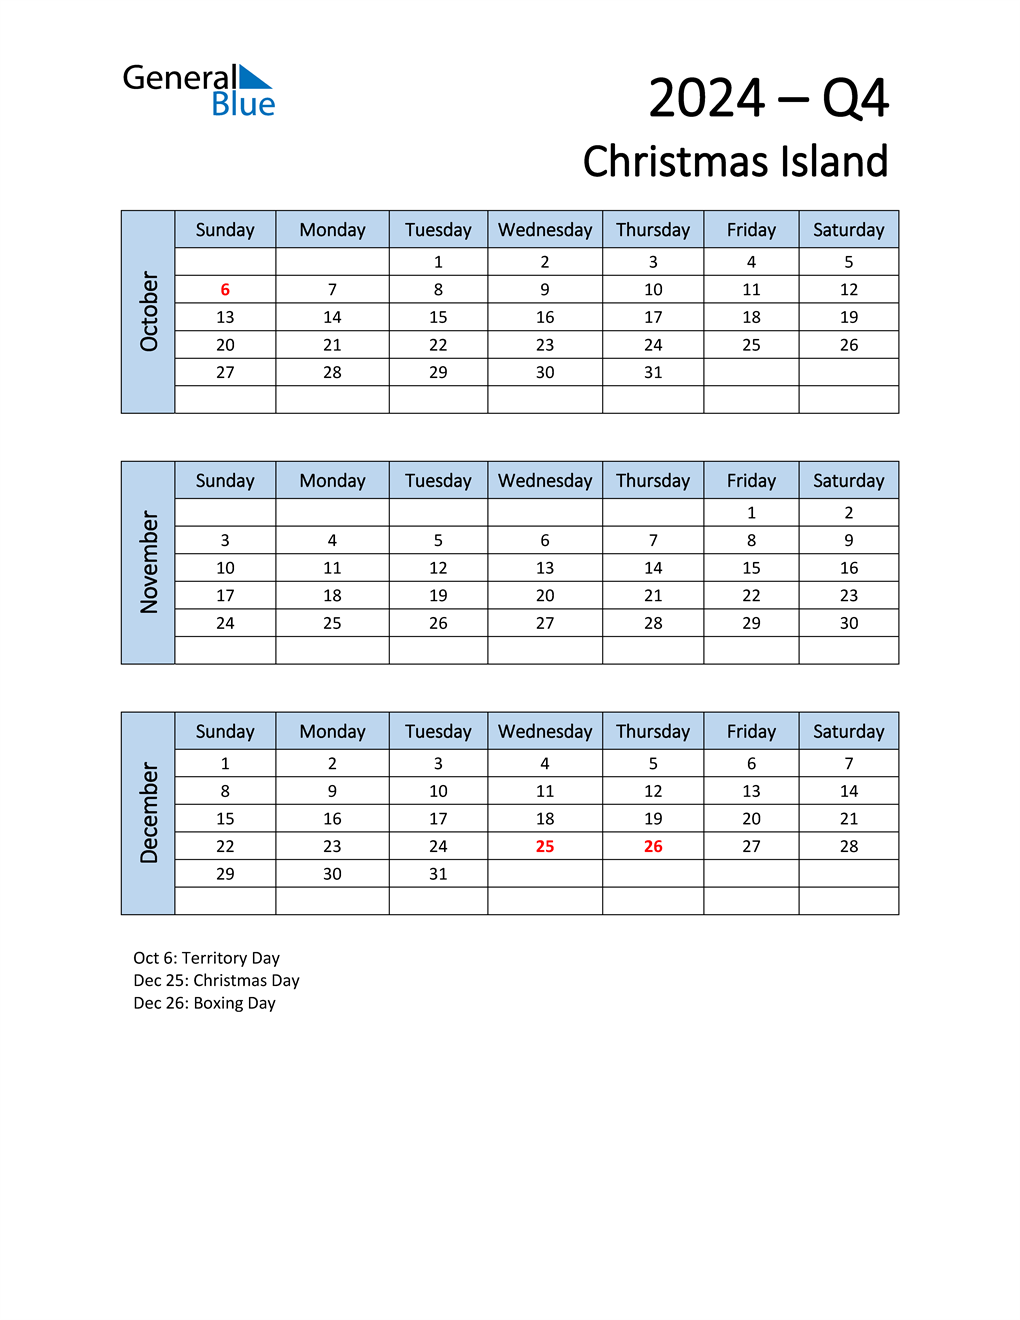  Free Q4 2024 Calendar for Christmas Island